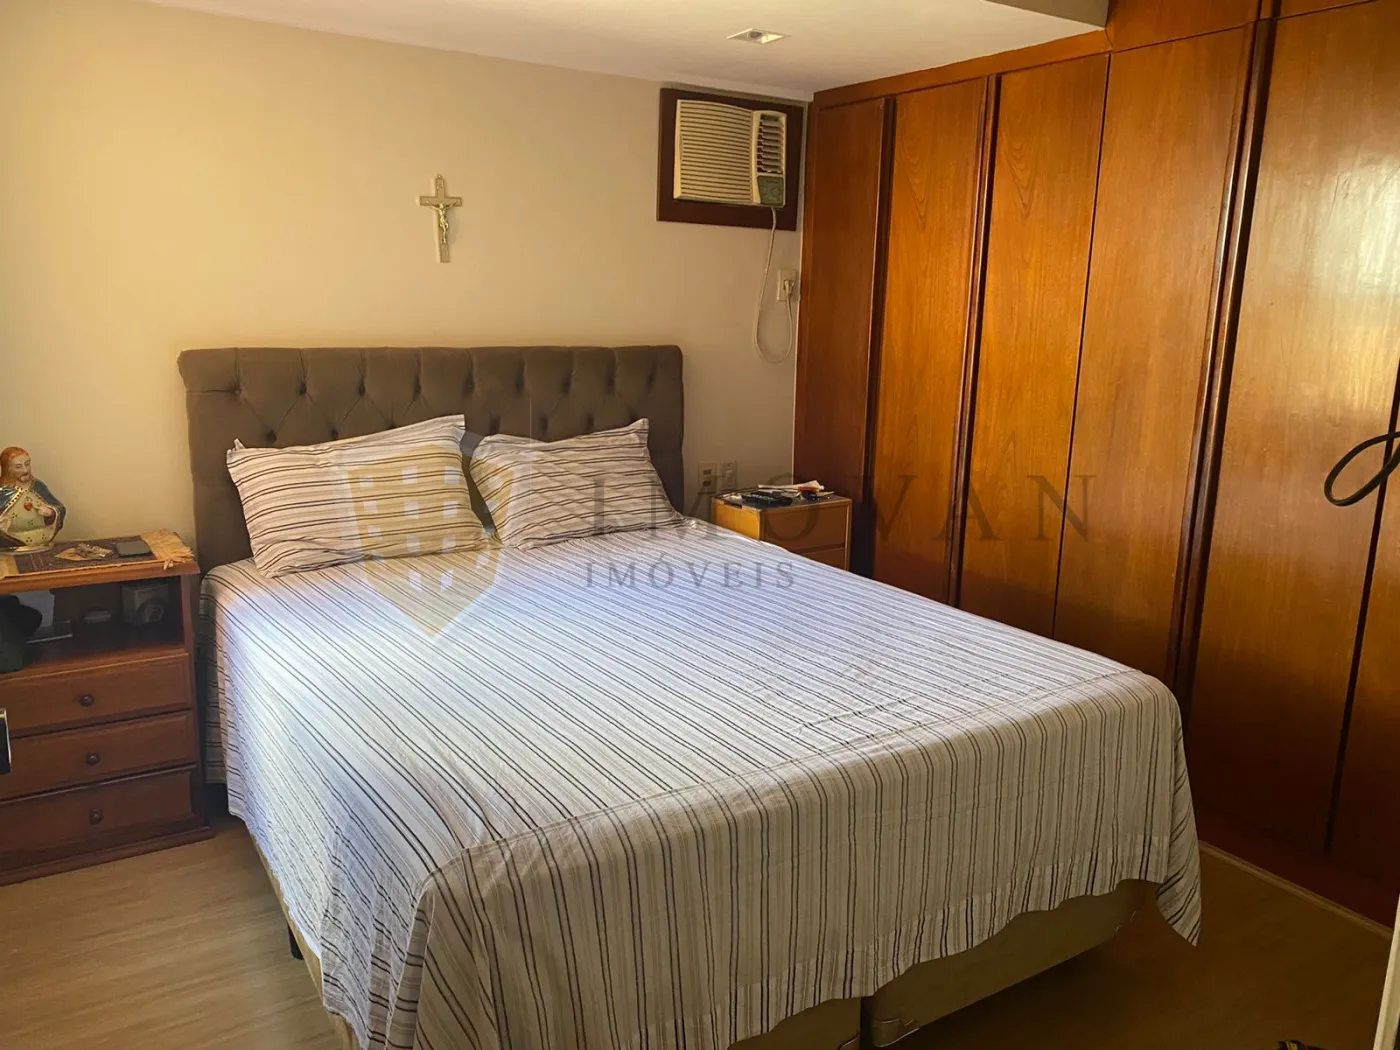 Comprar Apartamento / Padrão em Ribeirão Preto R$ 400.000,00 - Foto 16